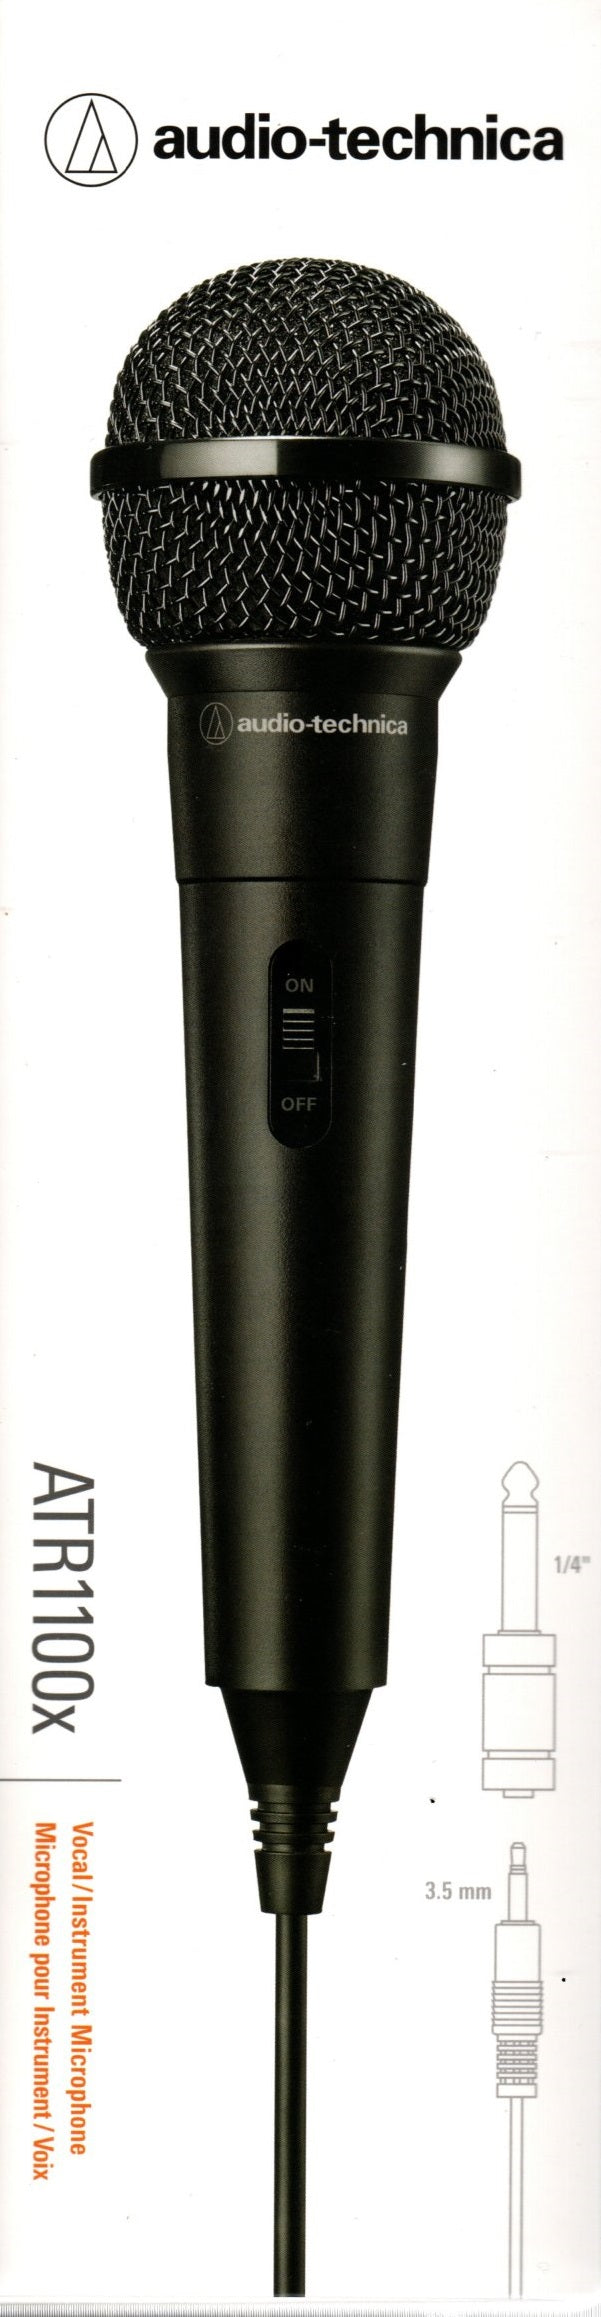 Microfono Audio - Technica ATR1100X